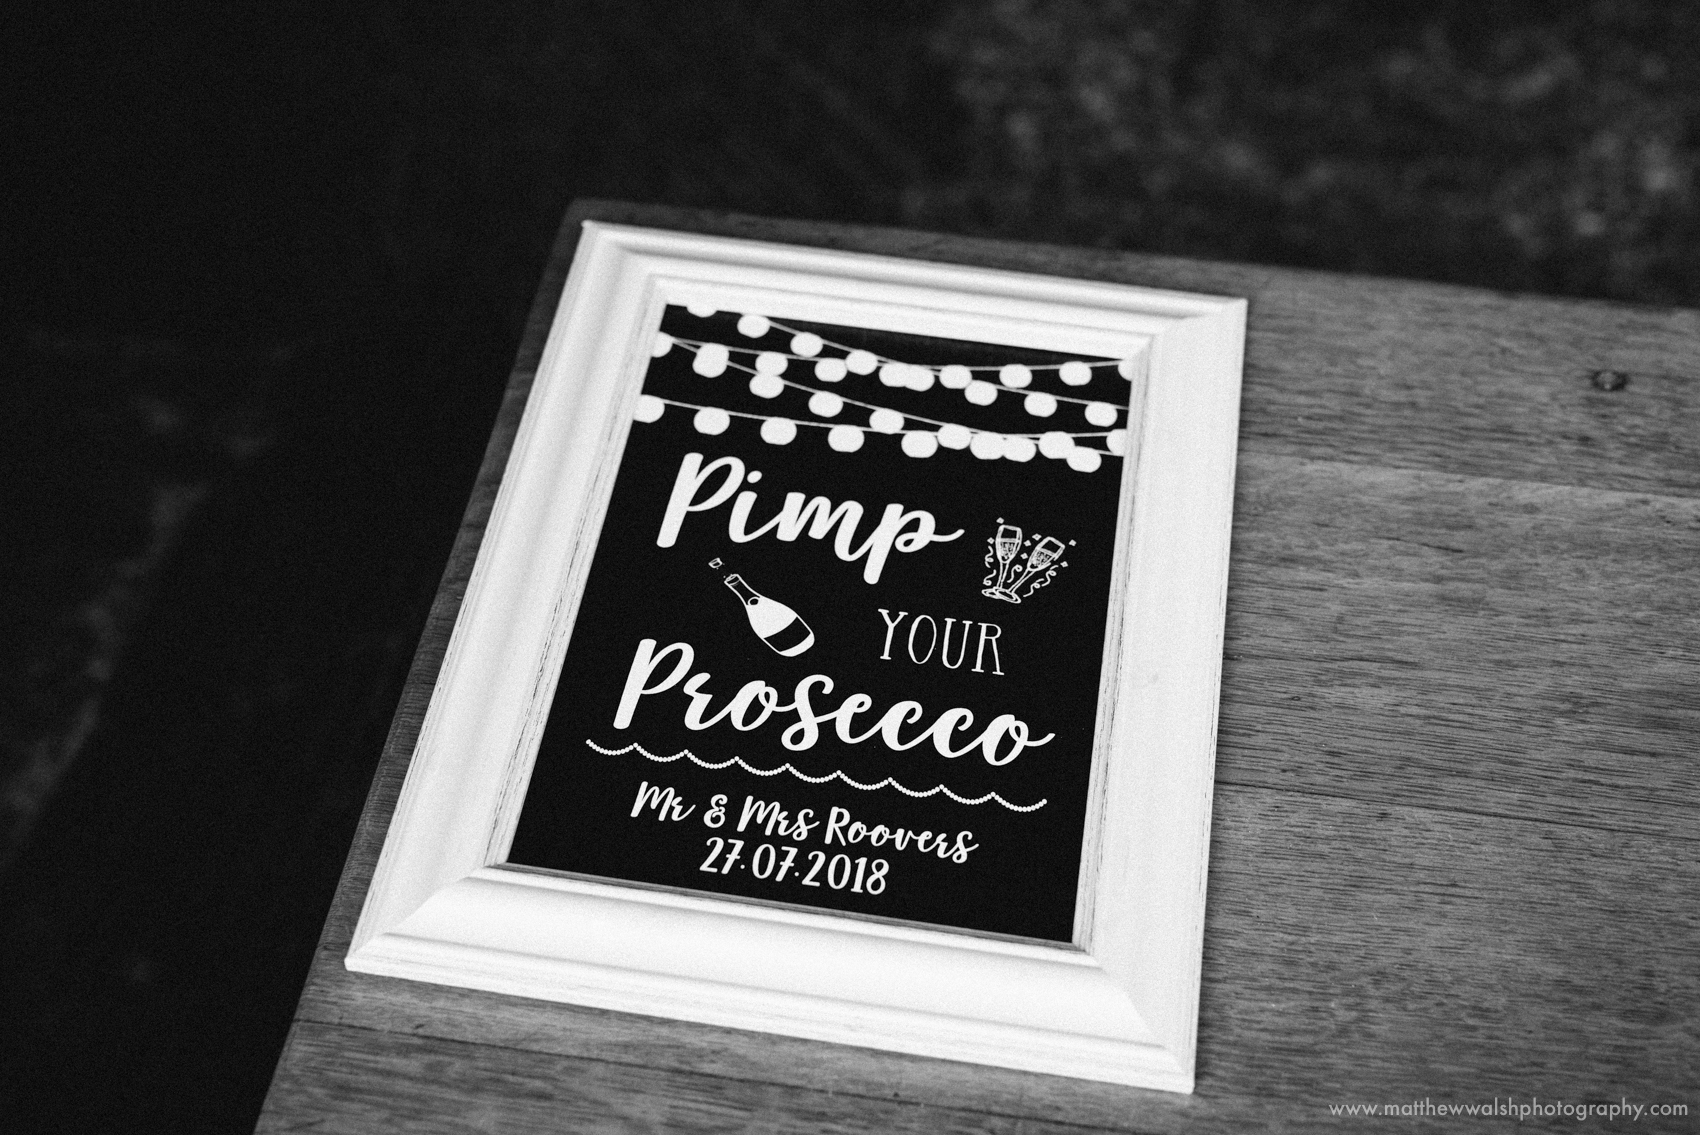 Pimp your Prosecco